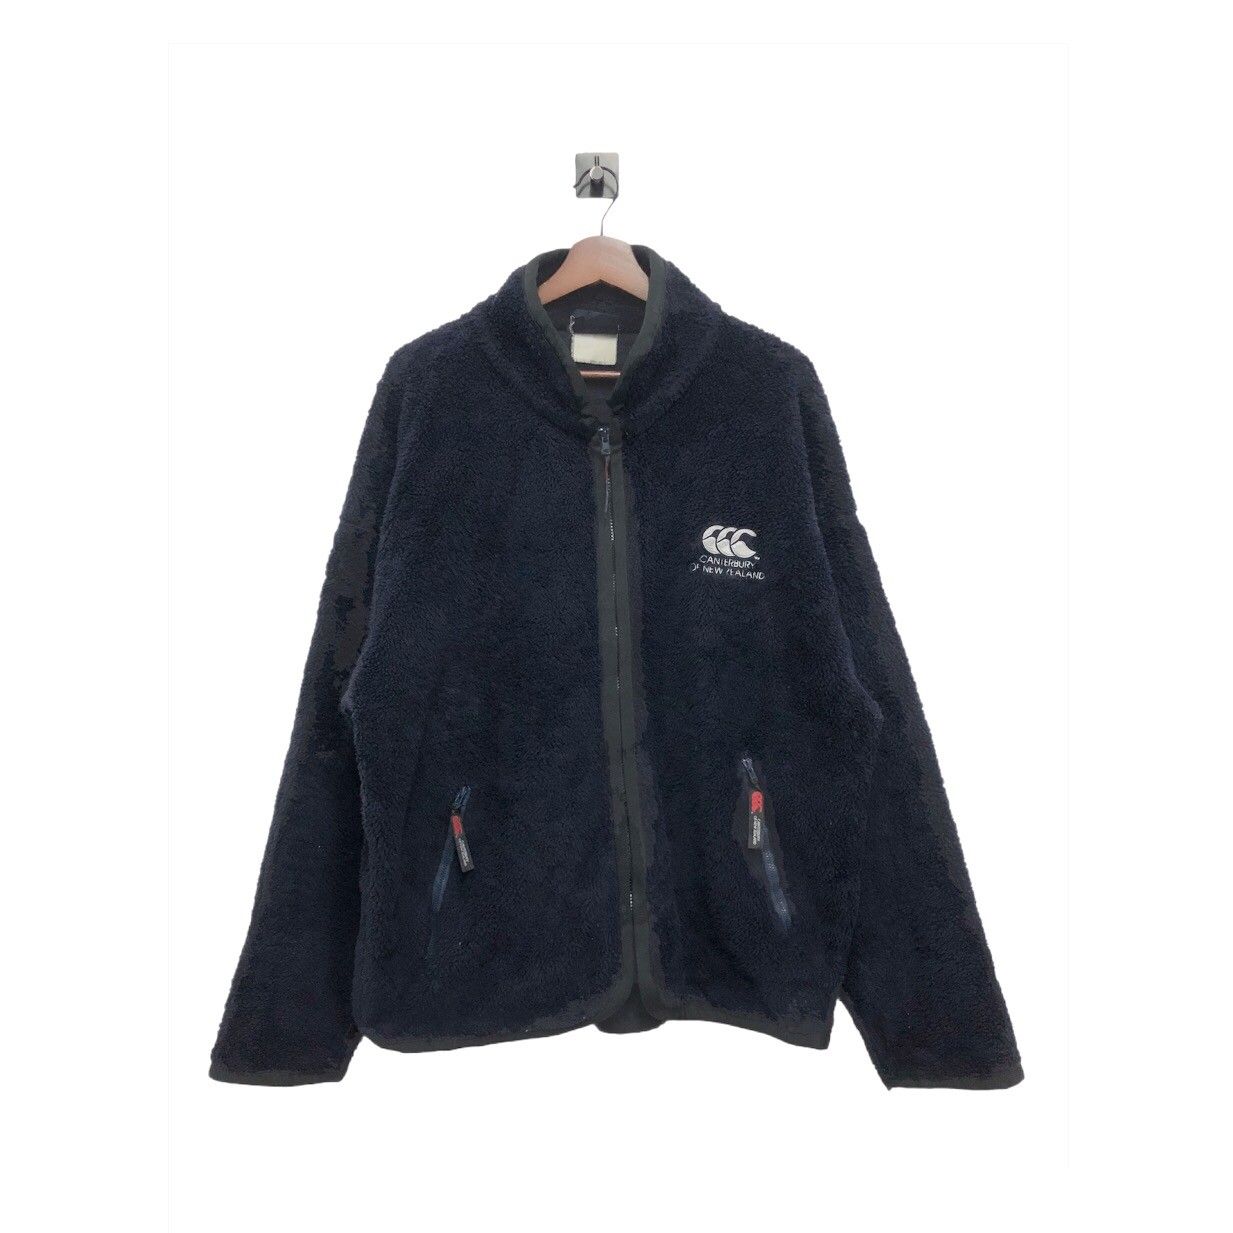 Vintage Canterbury of New Zealand Fleece Jacket - 1